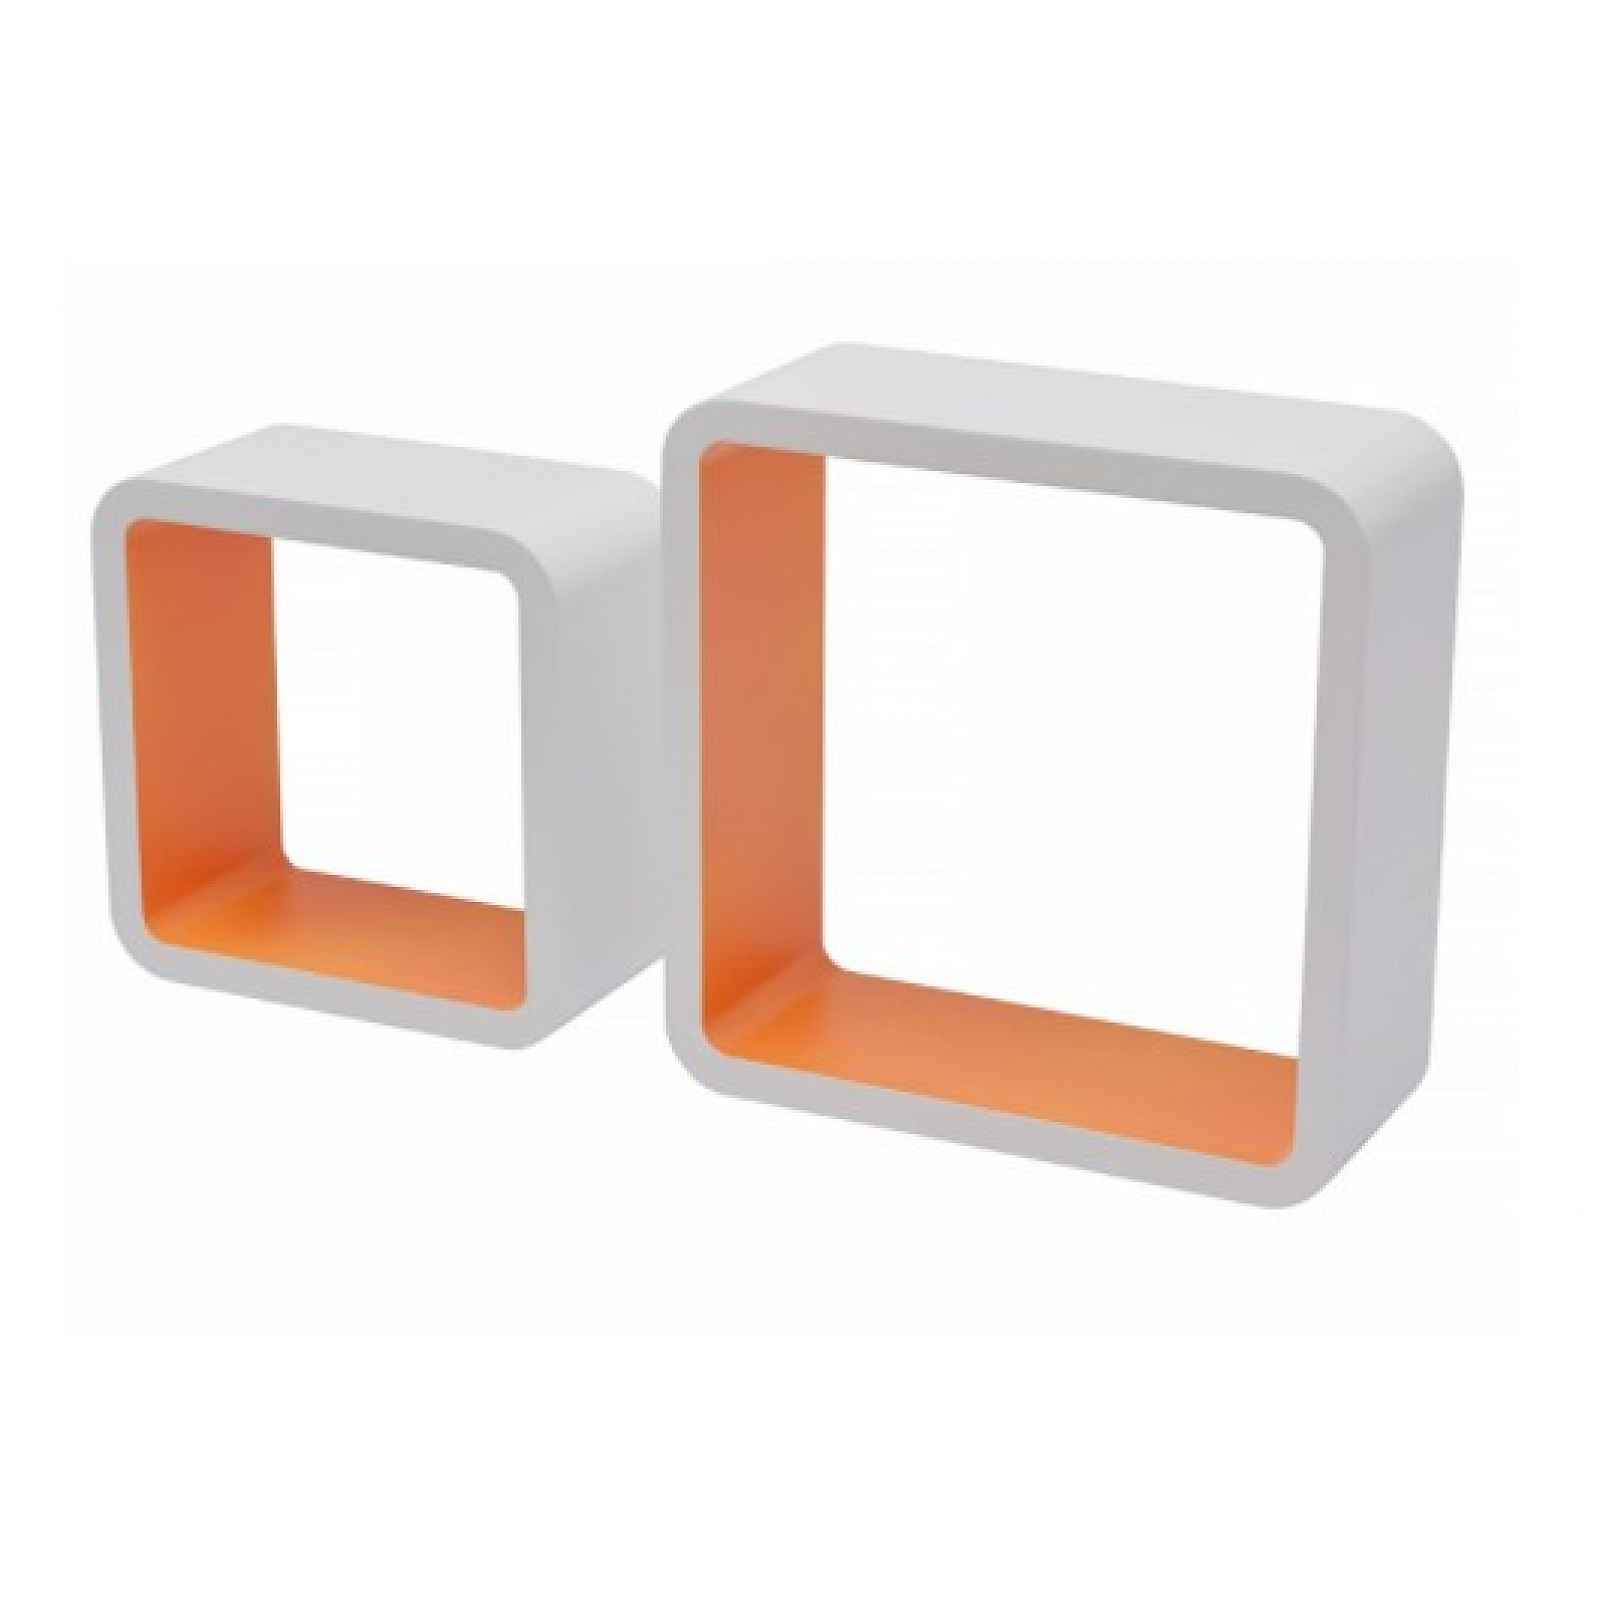 Sada 2 ks police Duo Cube, bílá/oranžová